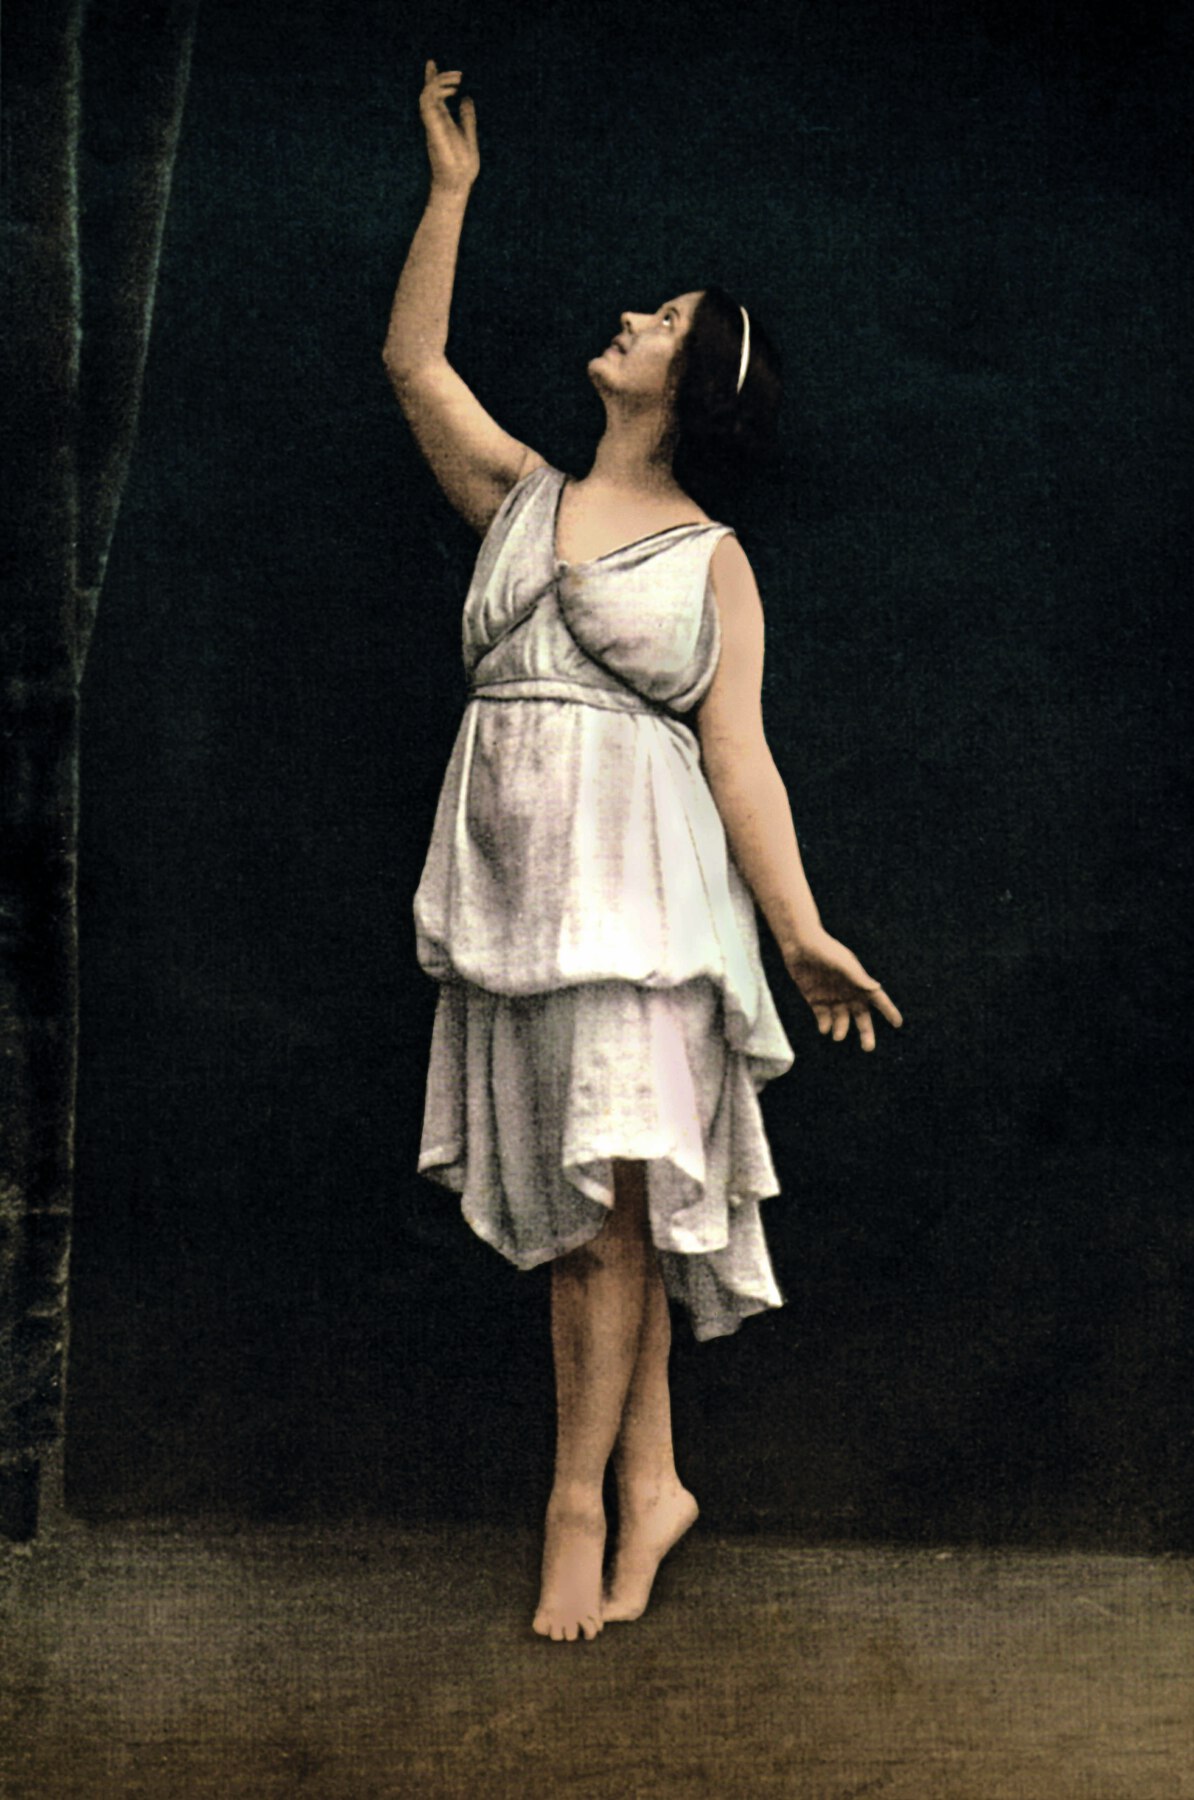 Fotografia. Mulher dança em um palco. Ela tem cabelo preto e usa um vestido claro médio. Está descalça na ponta dos pés, com o braço direito erguido e o rosto voltado para a mão direita. A mão esquerda permanece ao lado do corpo.